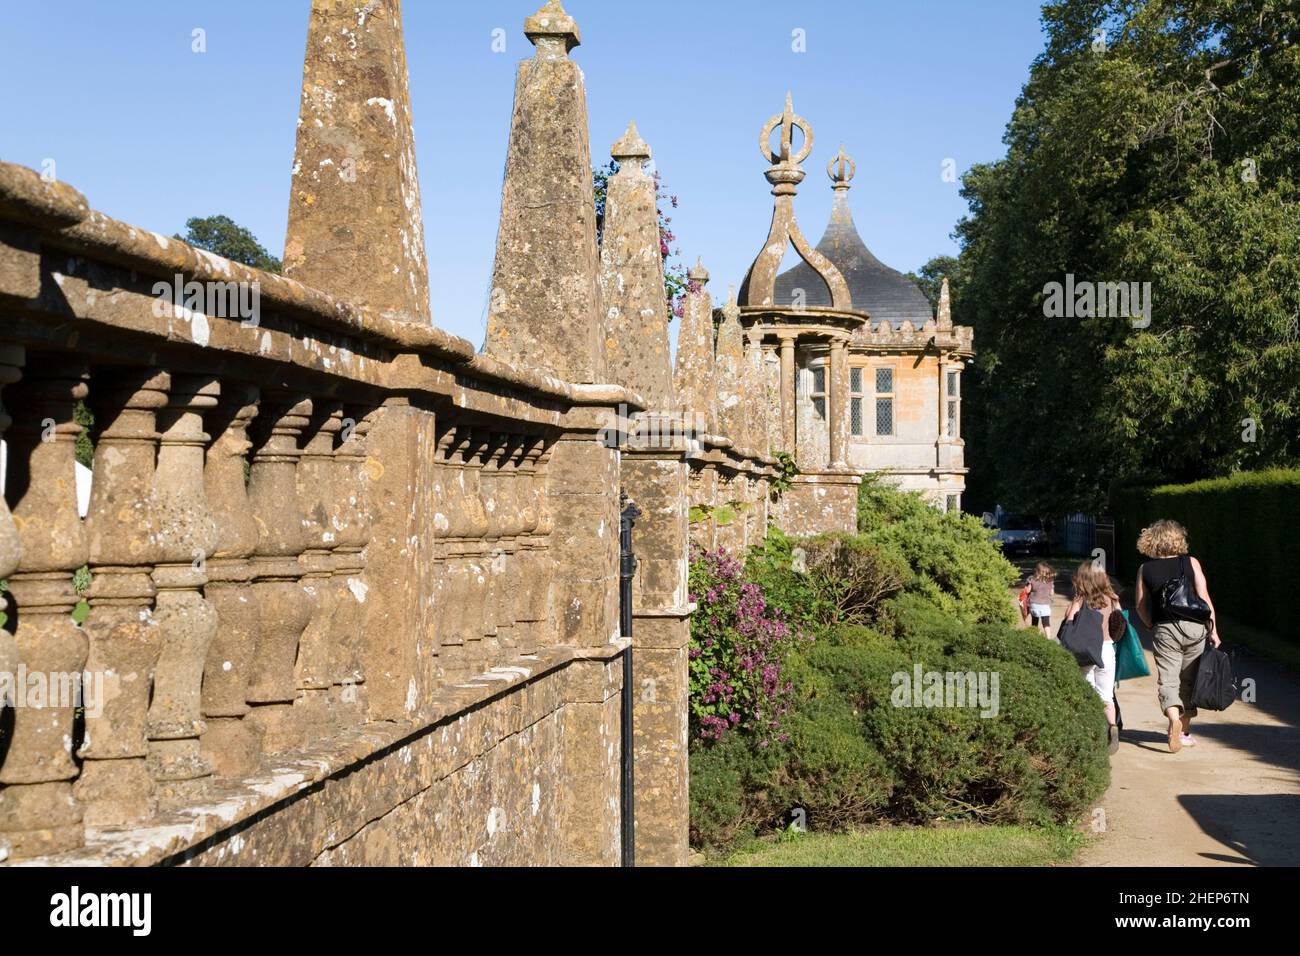 Un groupe de famille avec dos à la caméra, marcher le long d'un chemin et mur ornemental à la Maison de Montacute dans Somerset, Angleterre Banque D'Images